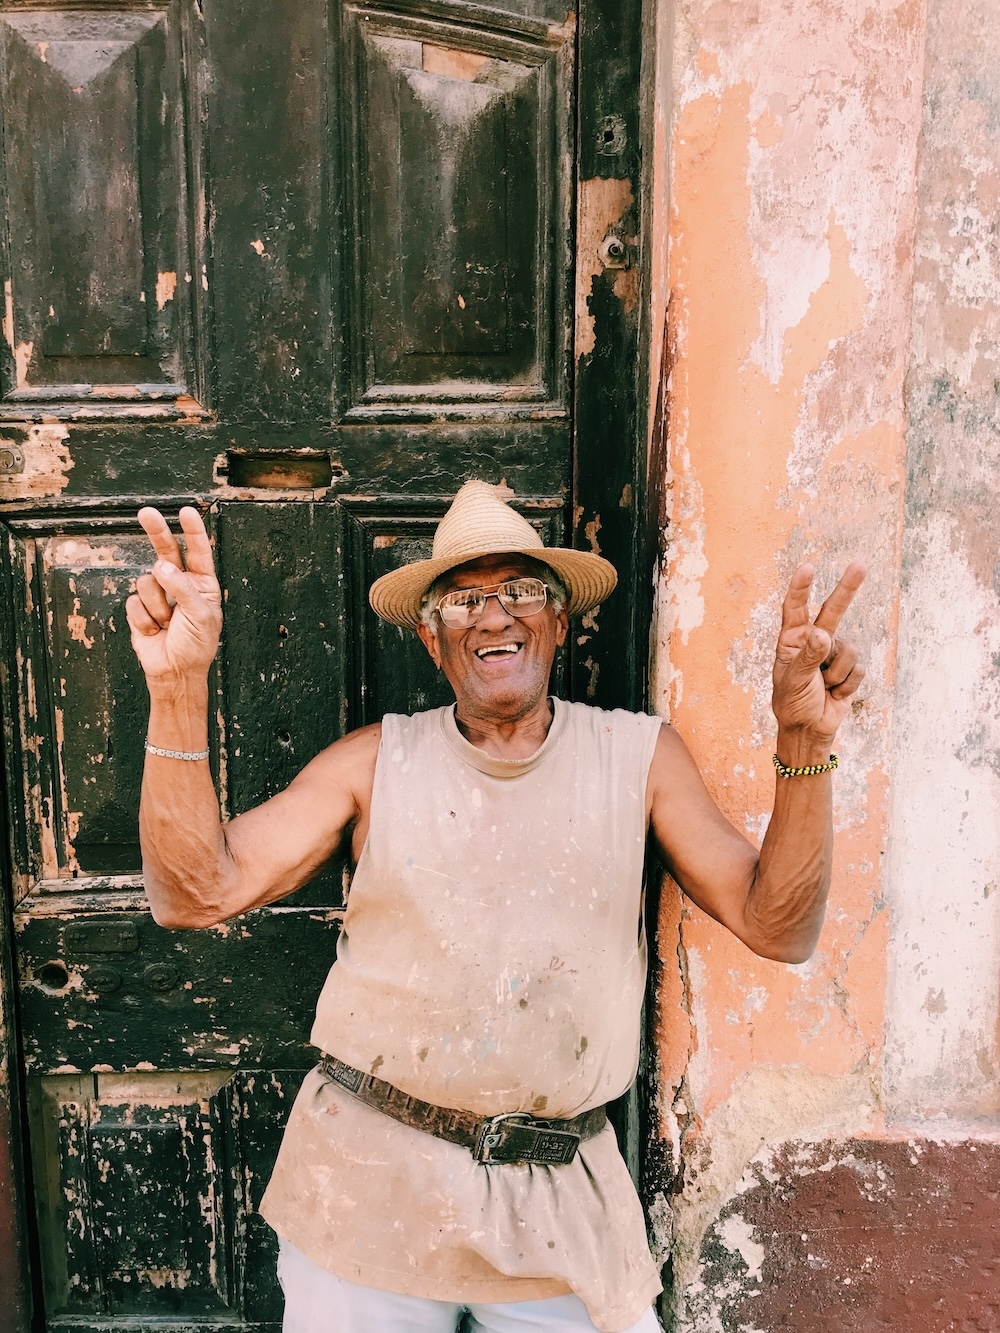 Vrolijke Cubaan, vakantie Cuba